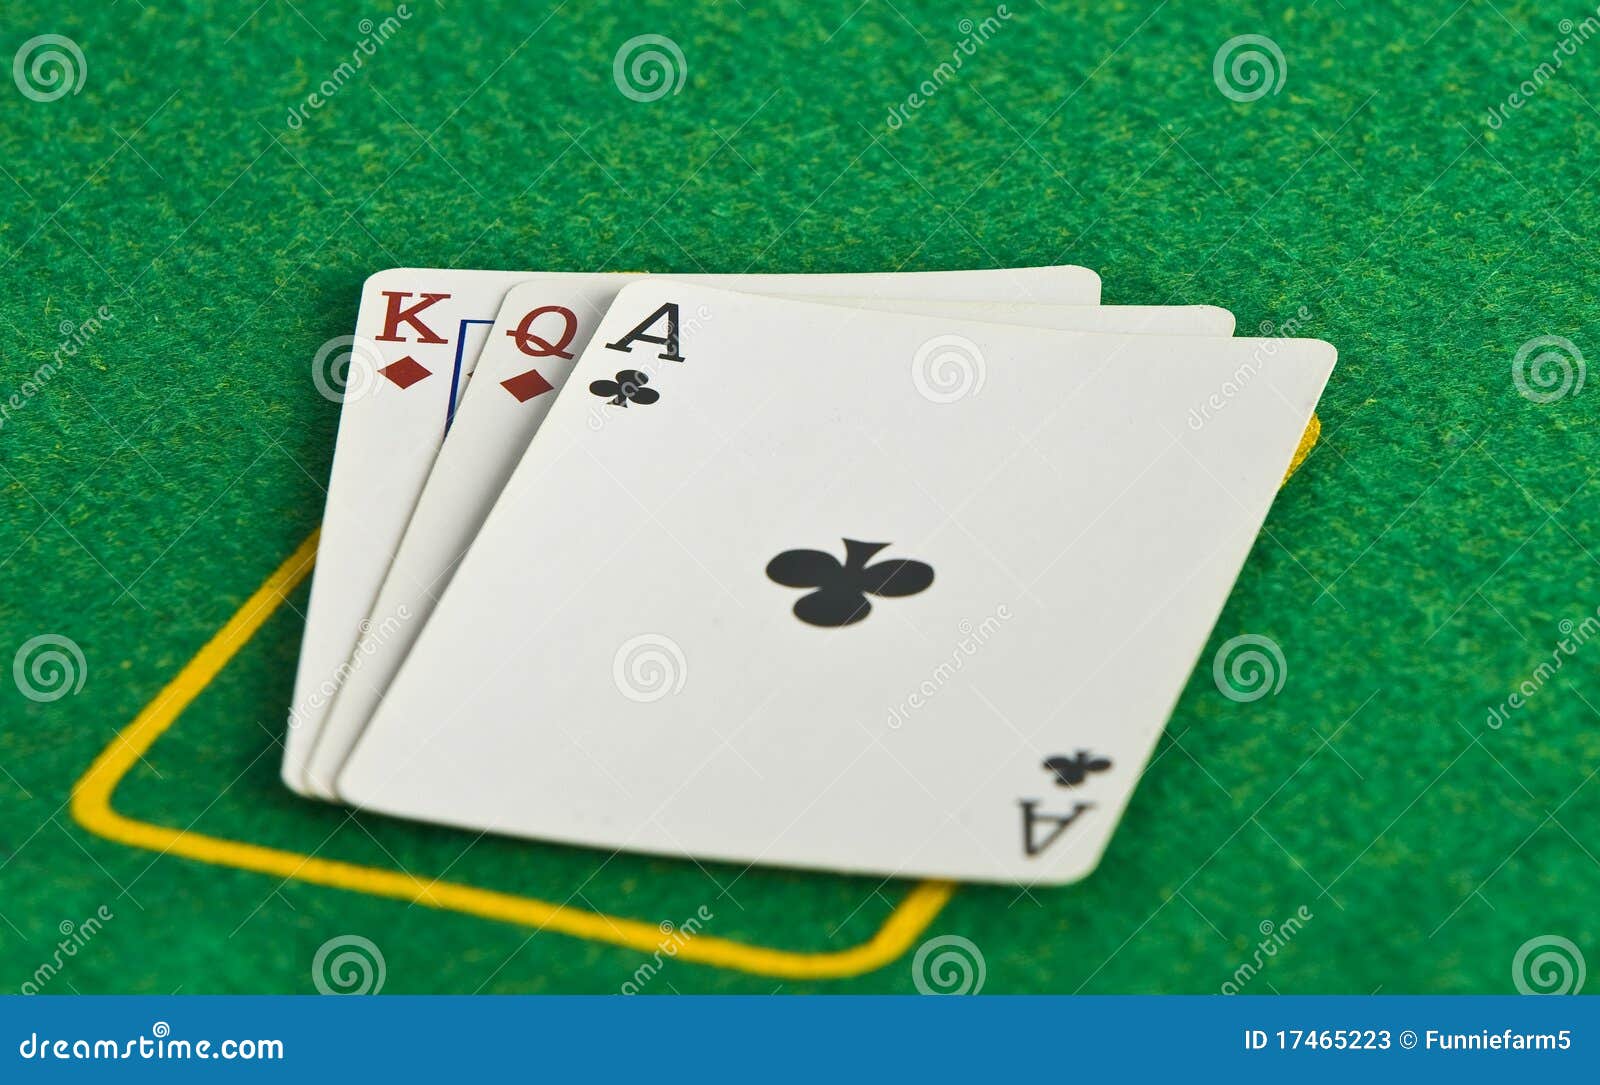 Share Casino Card